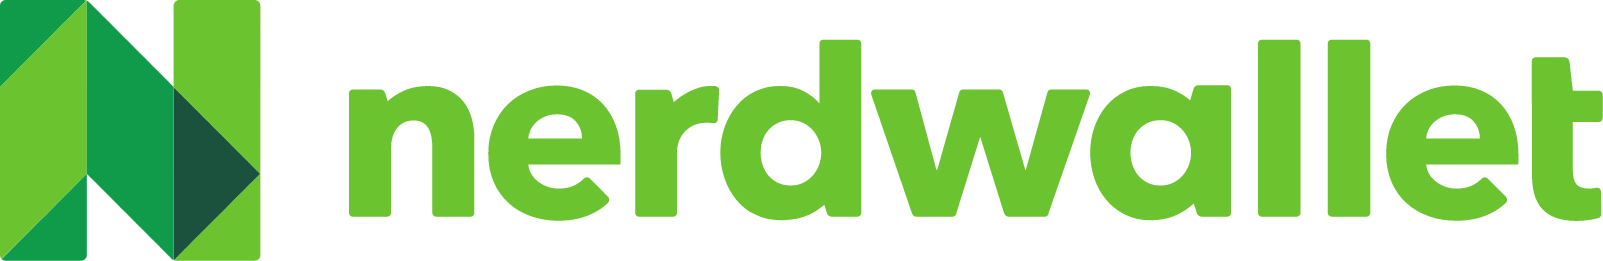 NerdWallet logo large (transparent PNG)